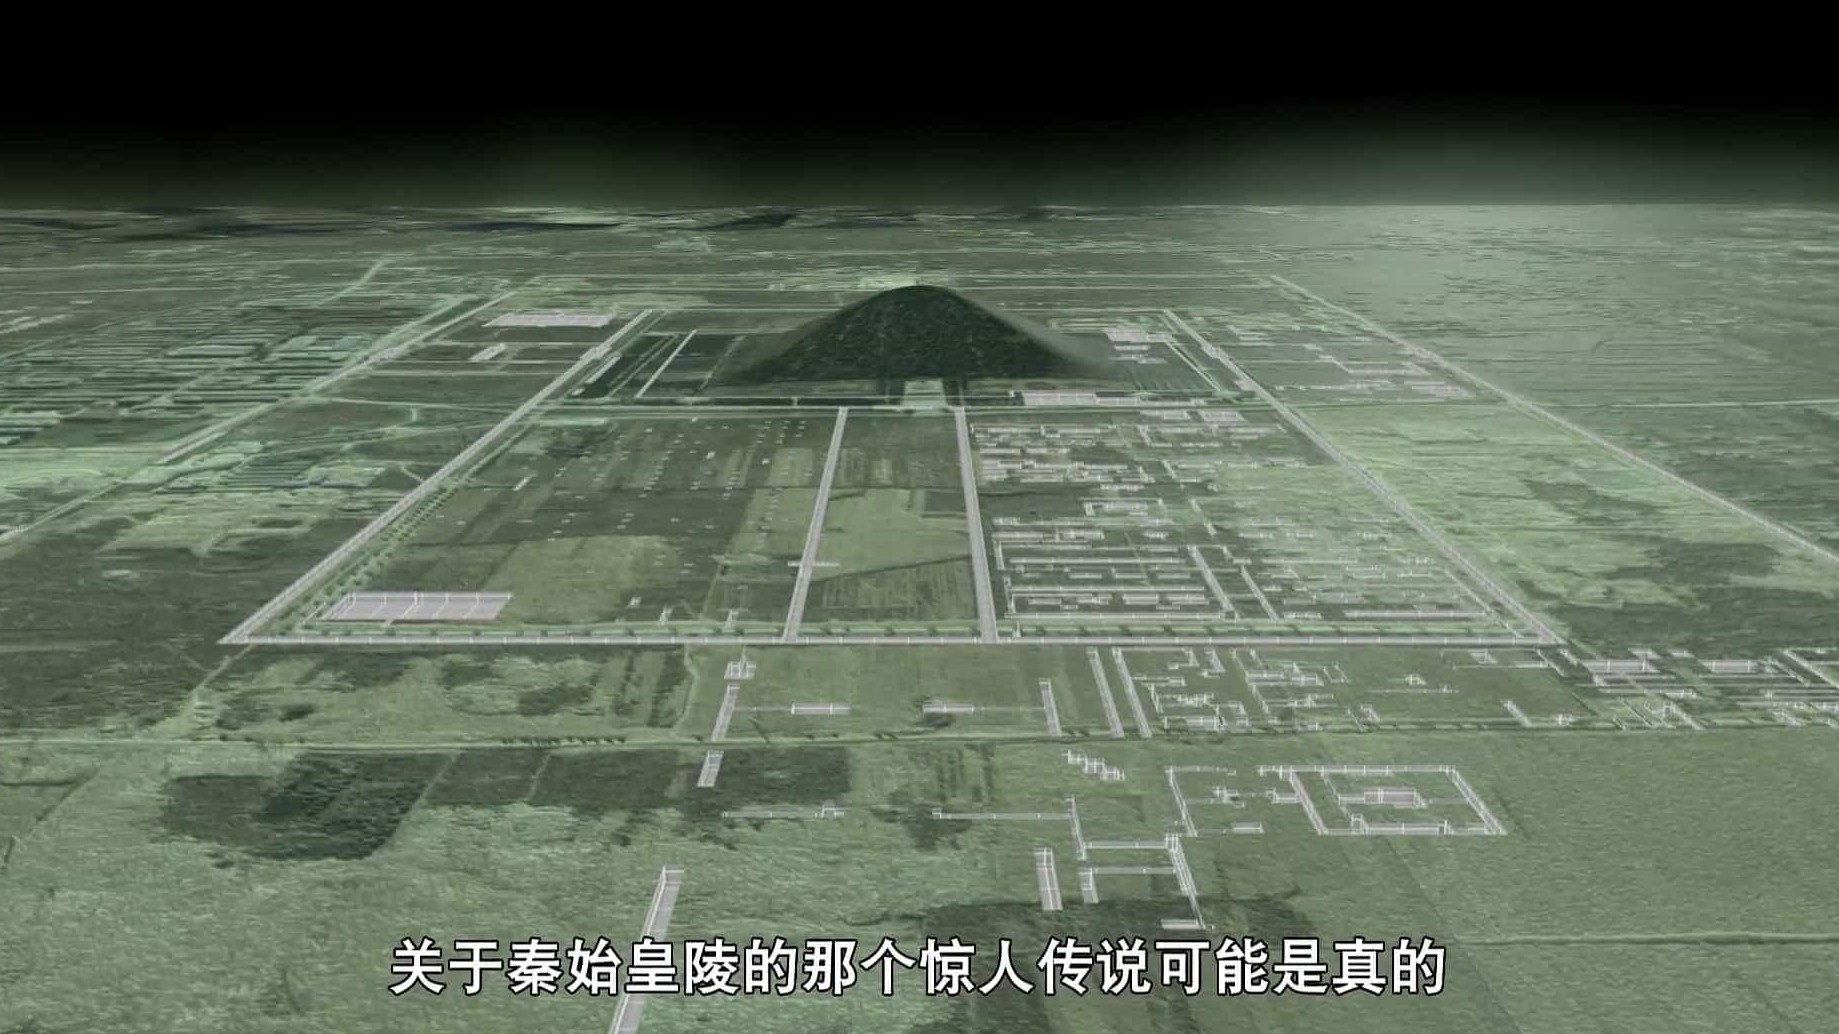 考古纪录片/考古系列《秦始皇陵的惊天秘密China's Megatomb Revealed